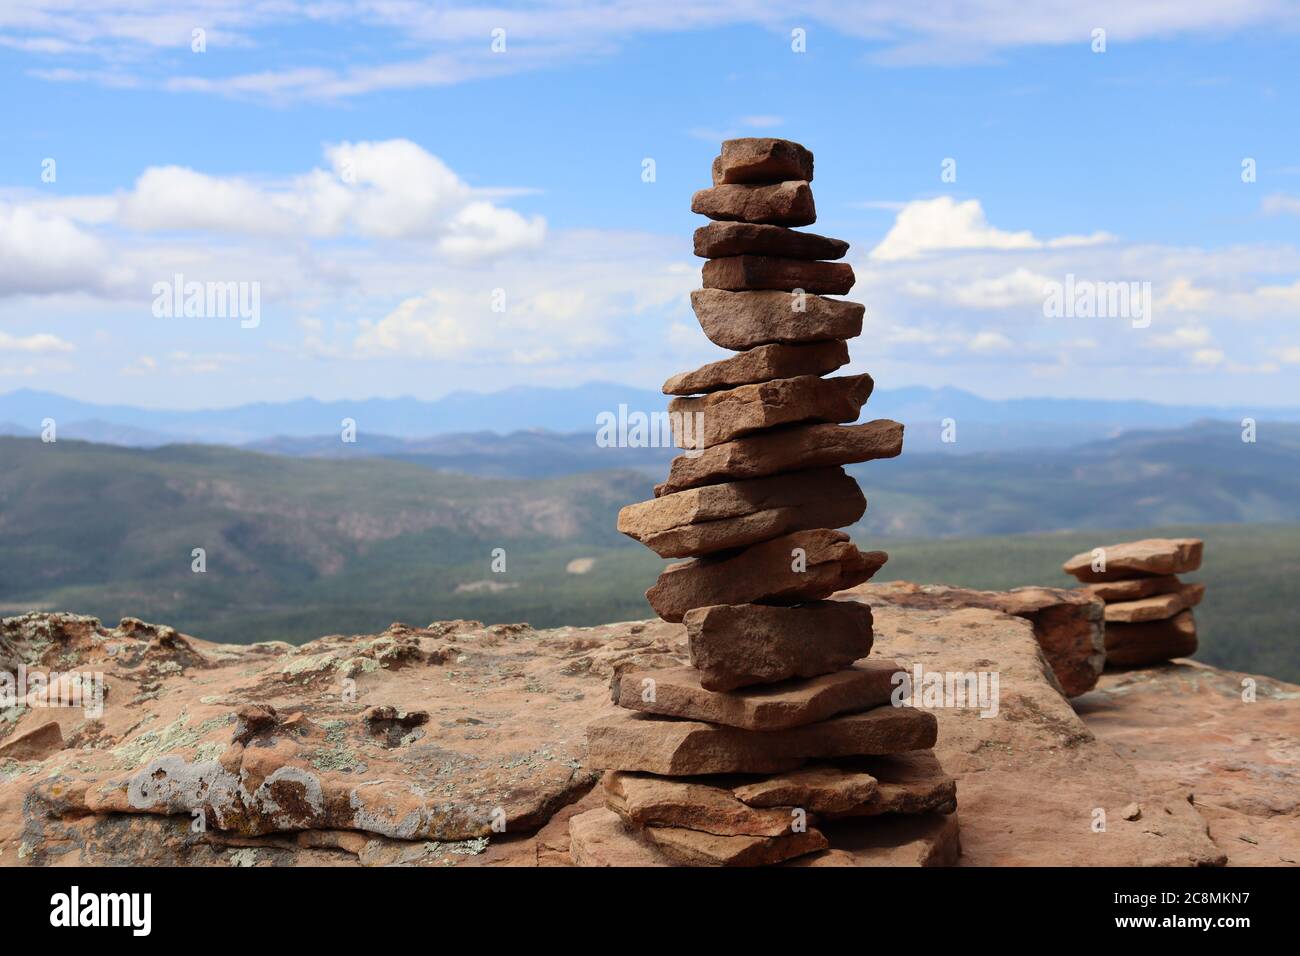 Le rocce bilanciate segnano tipicamente prove o percorsi, questo è stato trovato lungo il Mogollon Rim nel nord dell'Arizona. Foto Stock